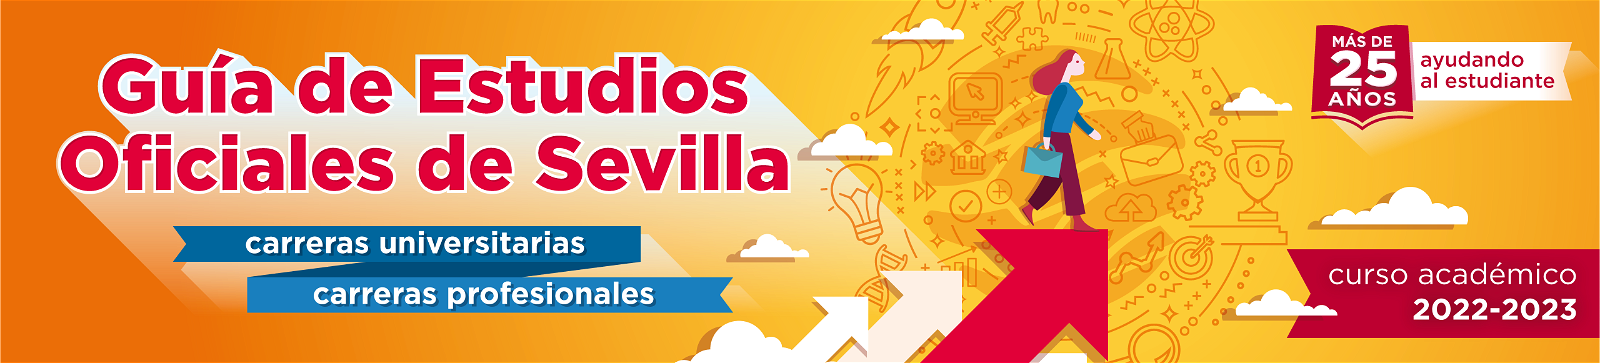 Guia de Estudios Oficiales de Sevilla 2022